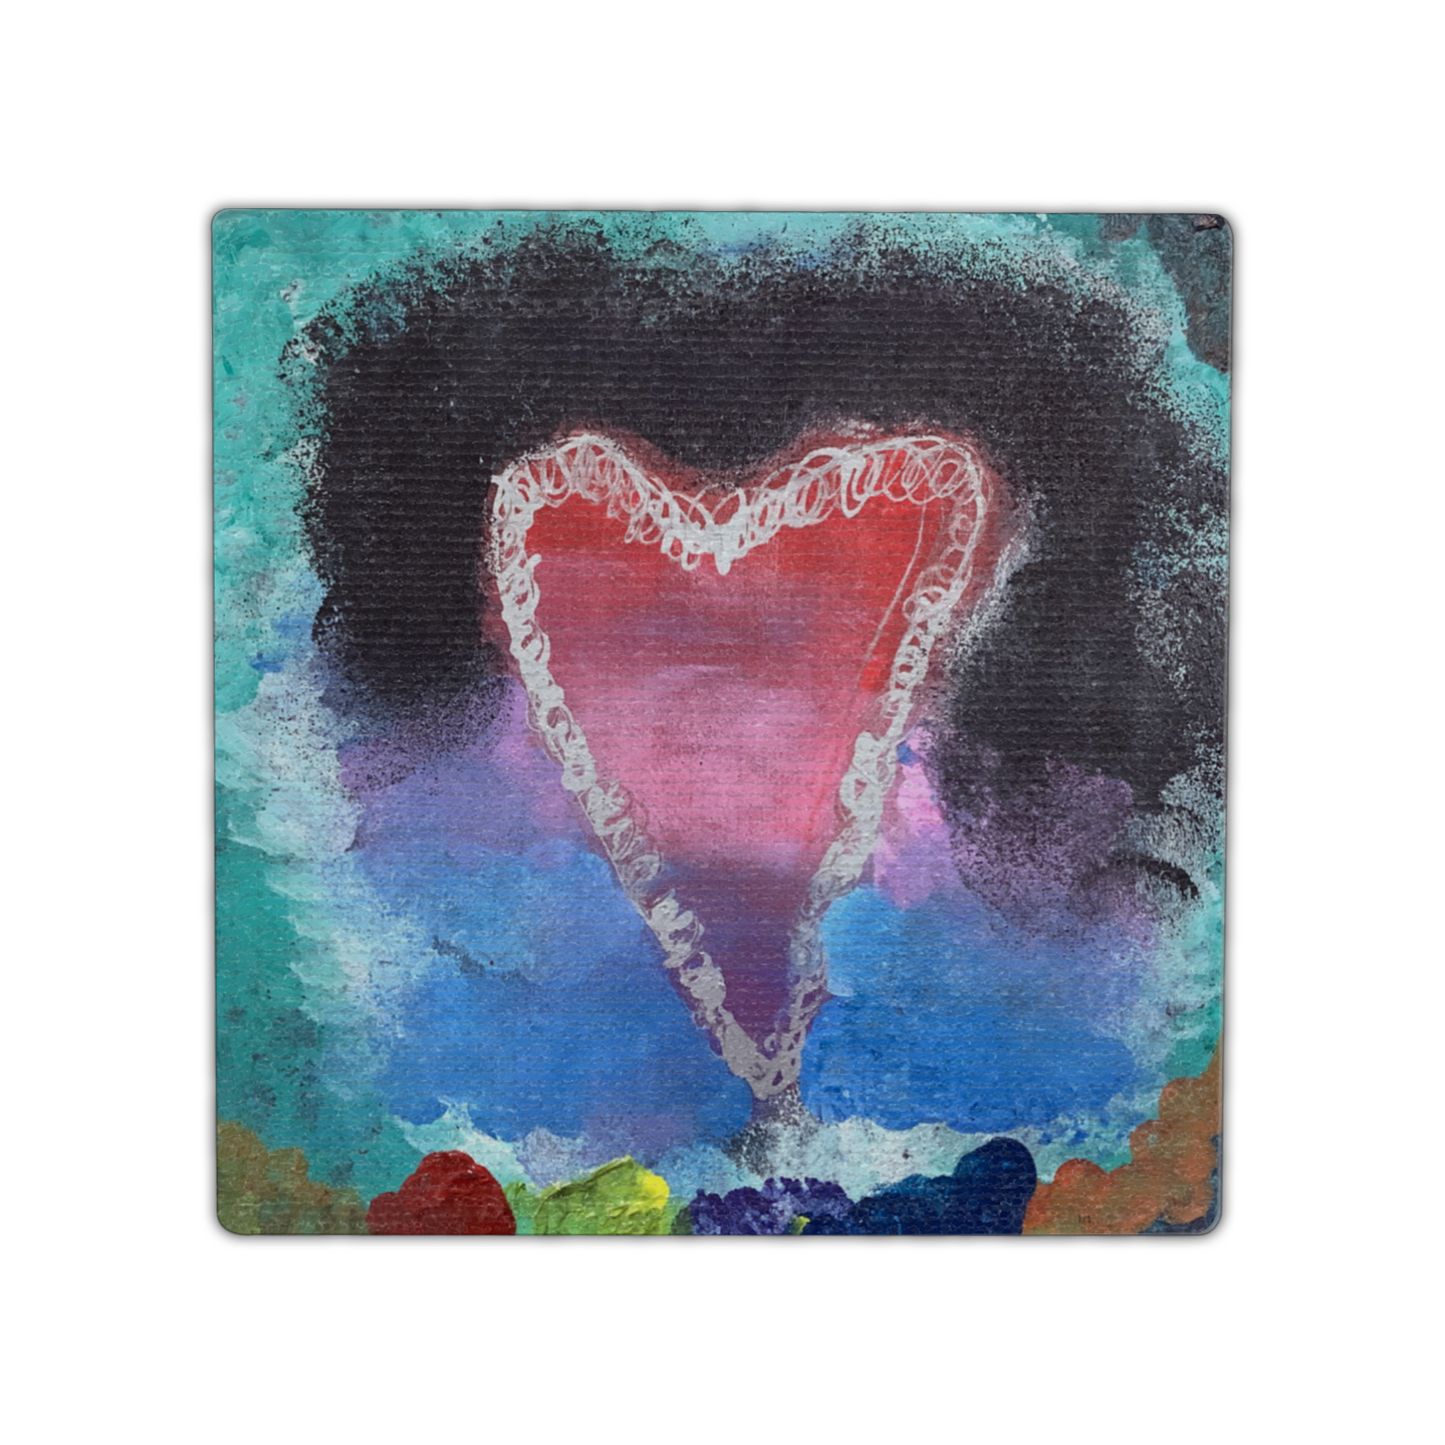 Twist Hearts "Love Overcomes the Dark" Single Linen Coaster